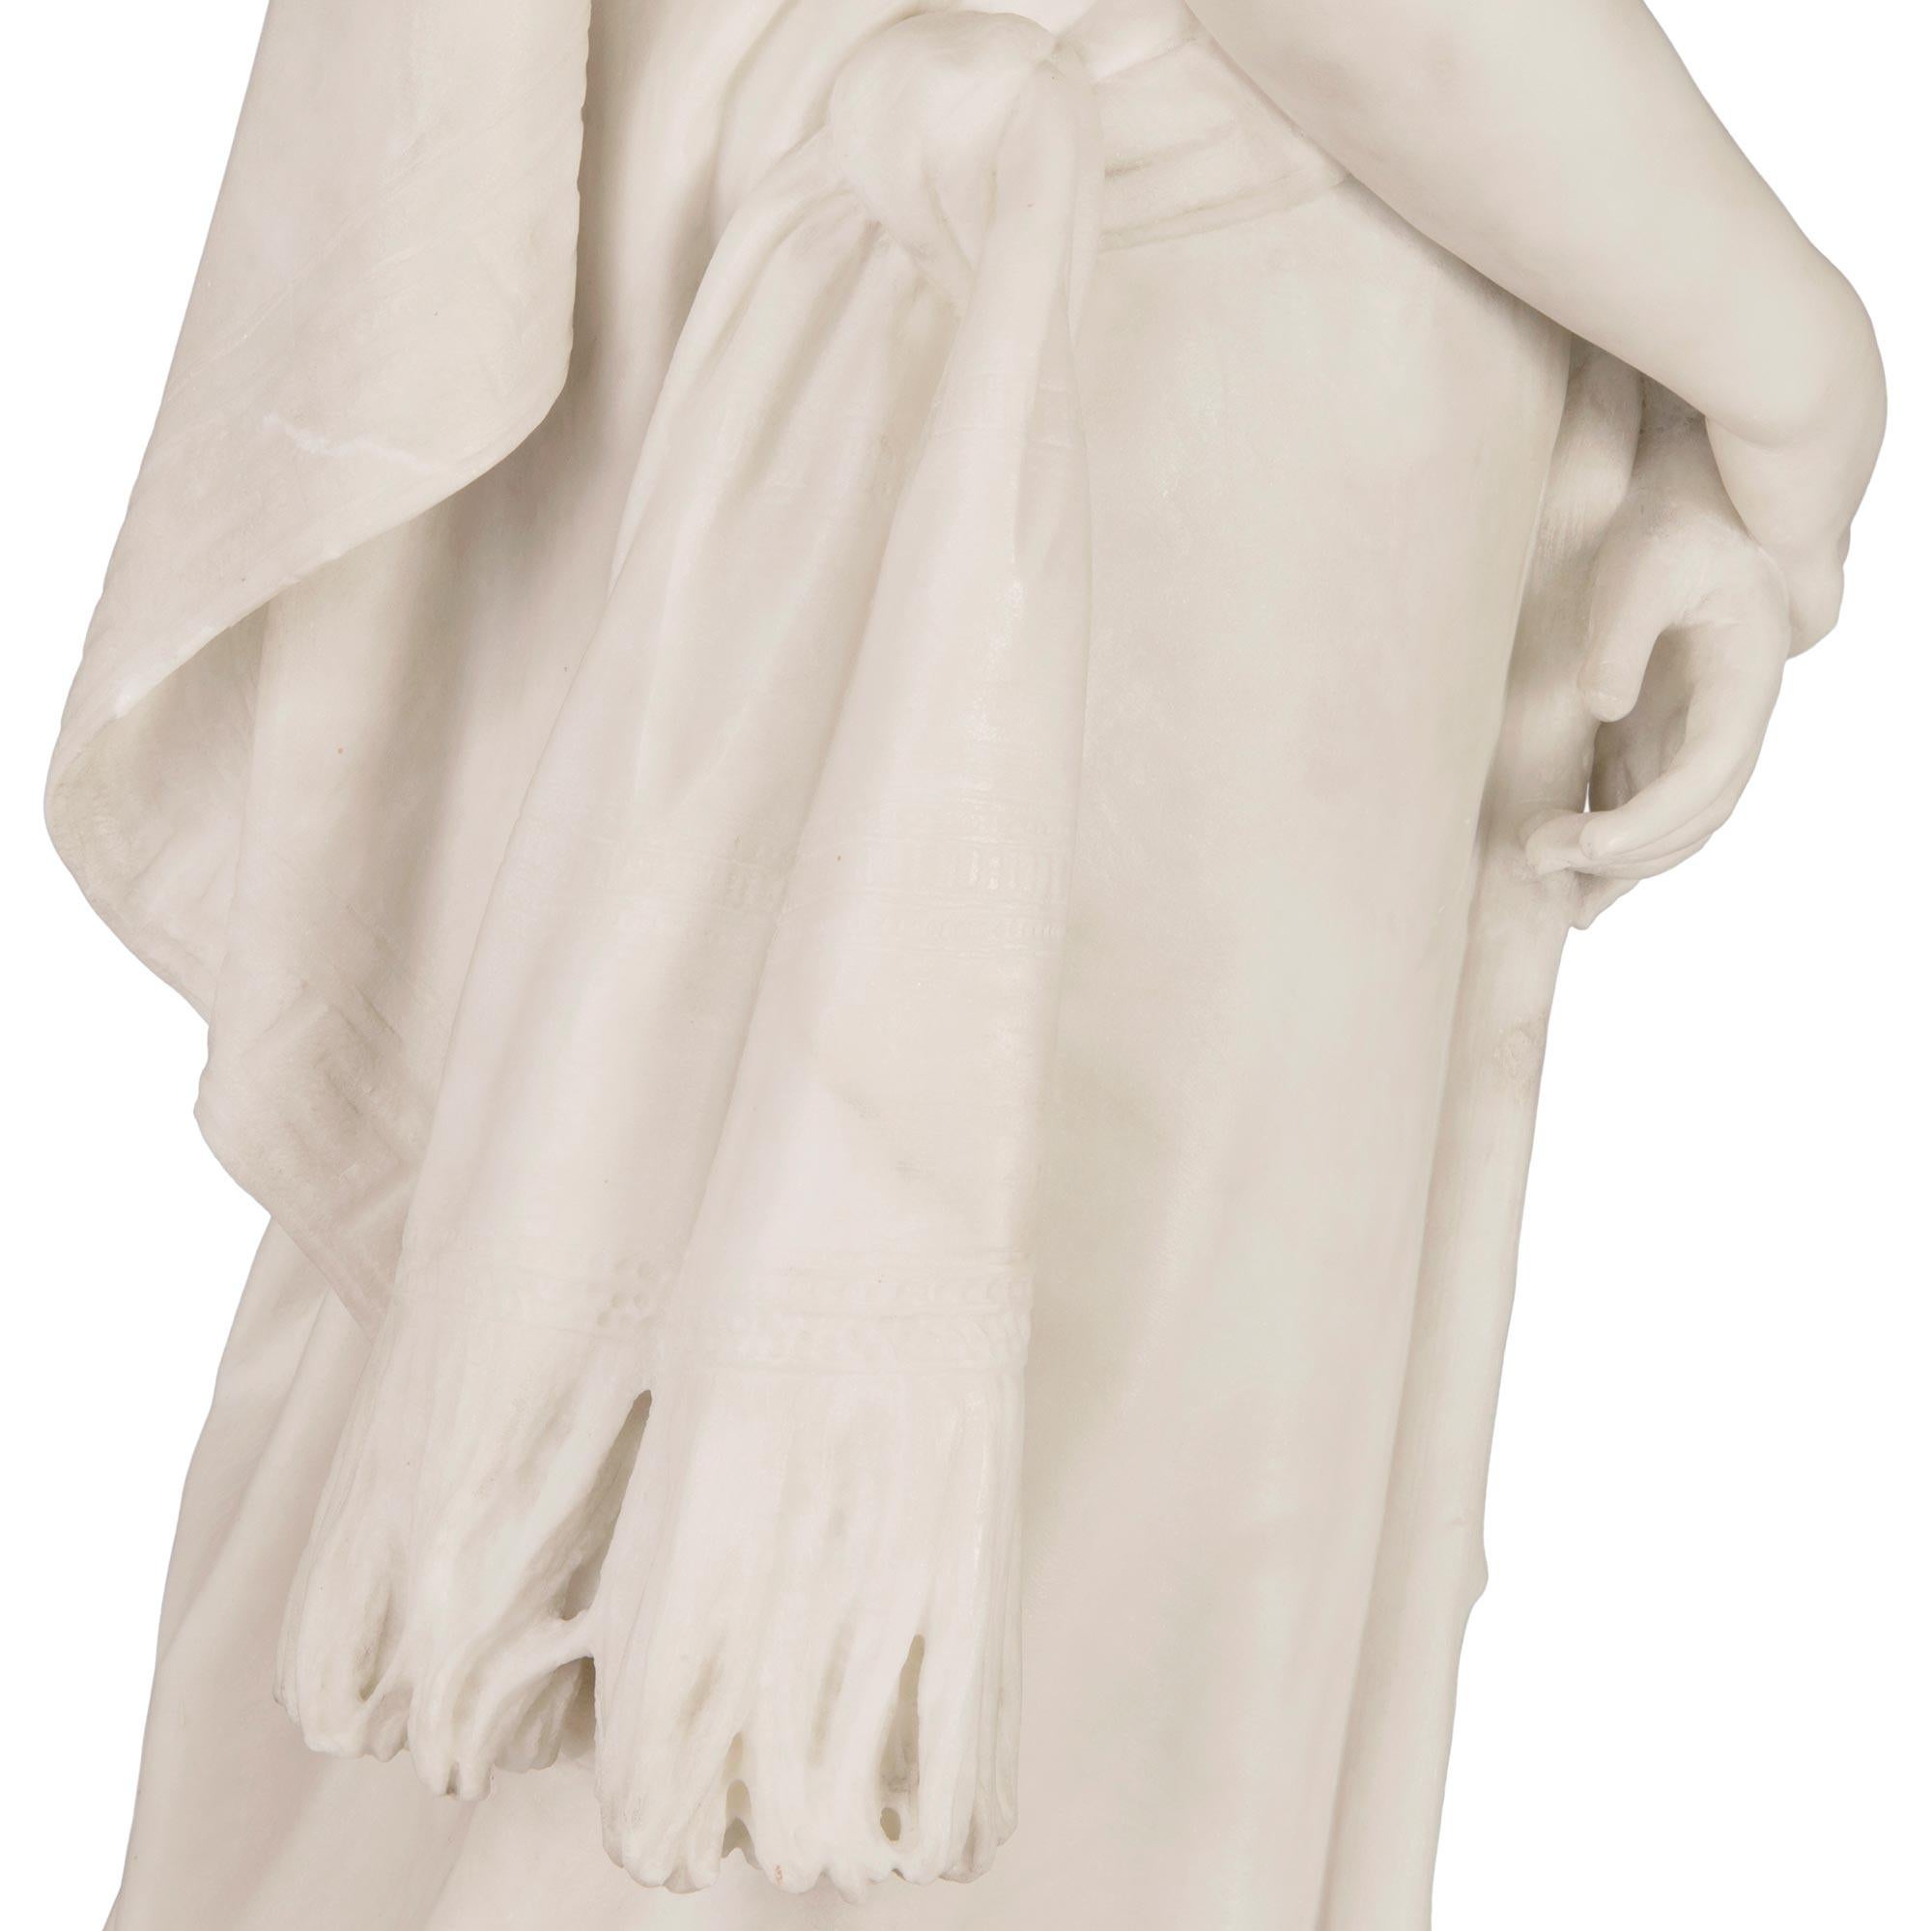 Italian 19th Century White Carrara Marble Statue Signed F. Vichi. Firenze For Sale 2